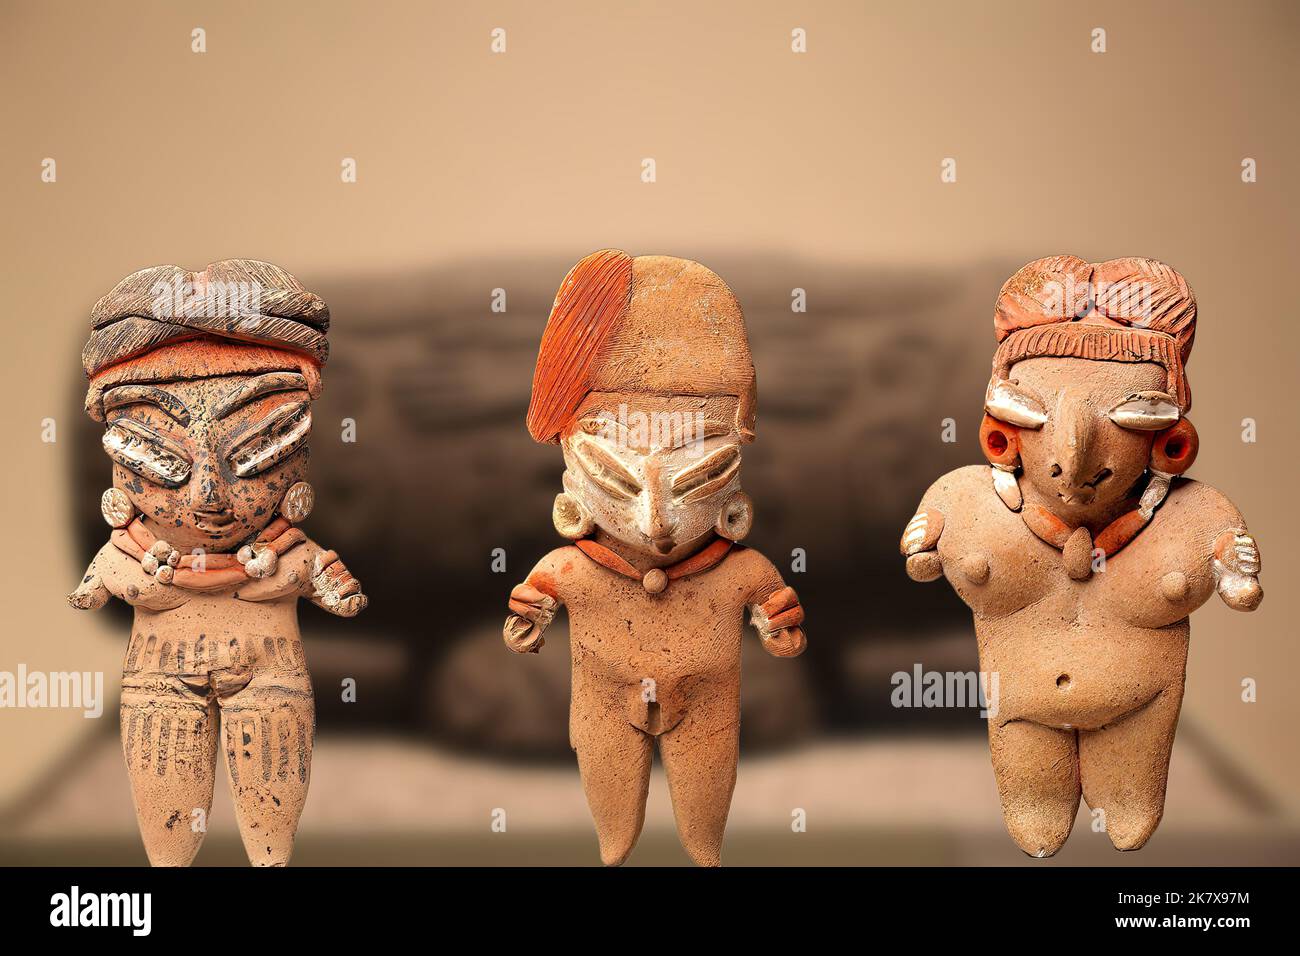 Aztec Art - Three Aztec statuettes representing female figures Stock Photo